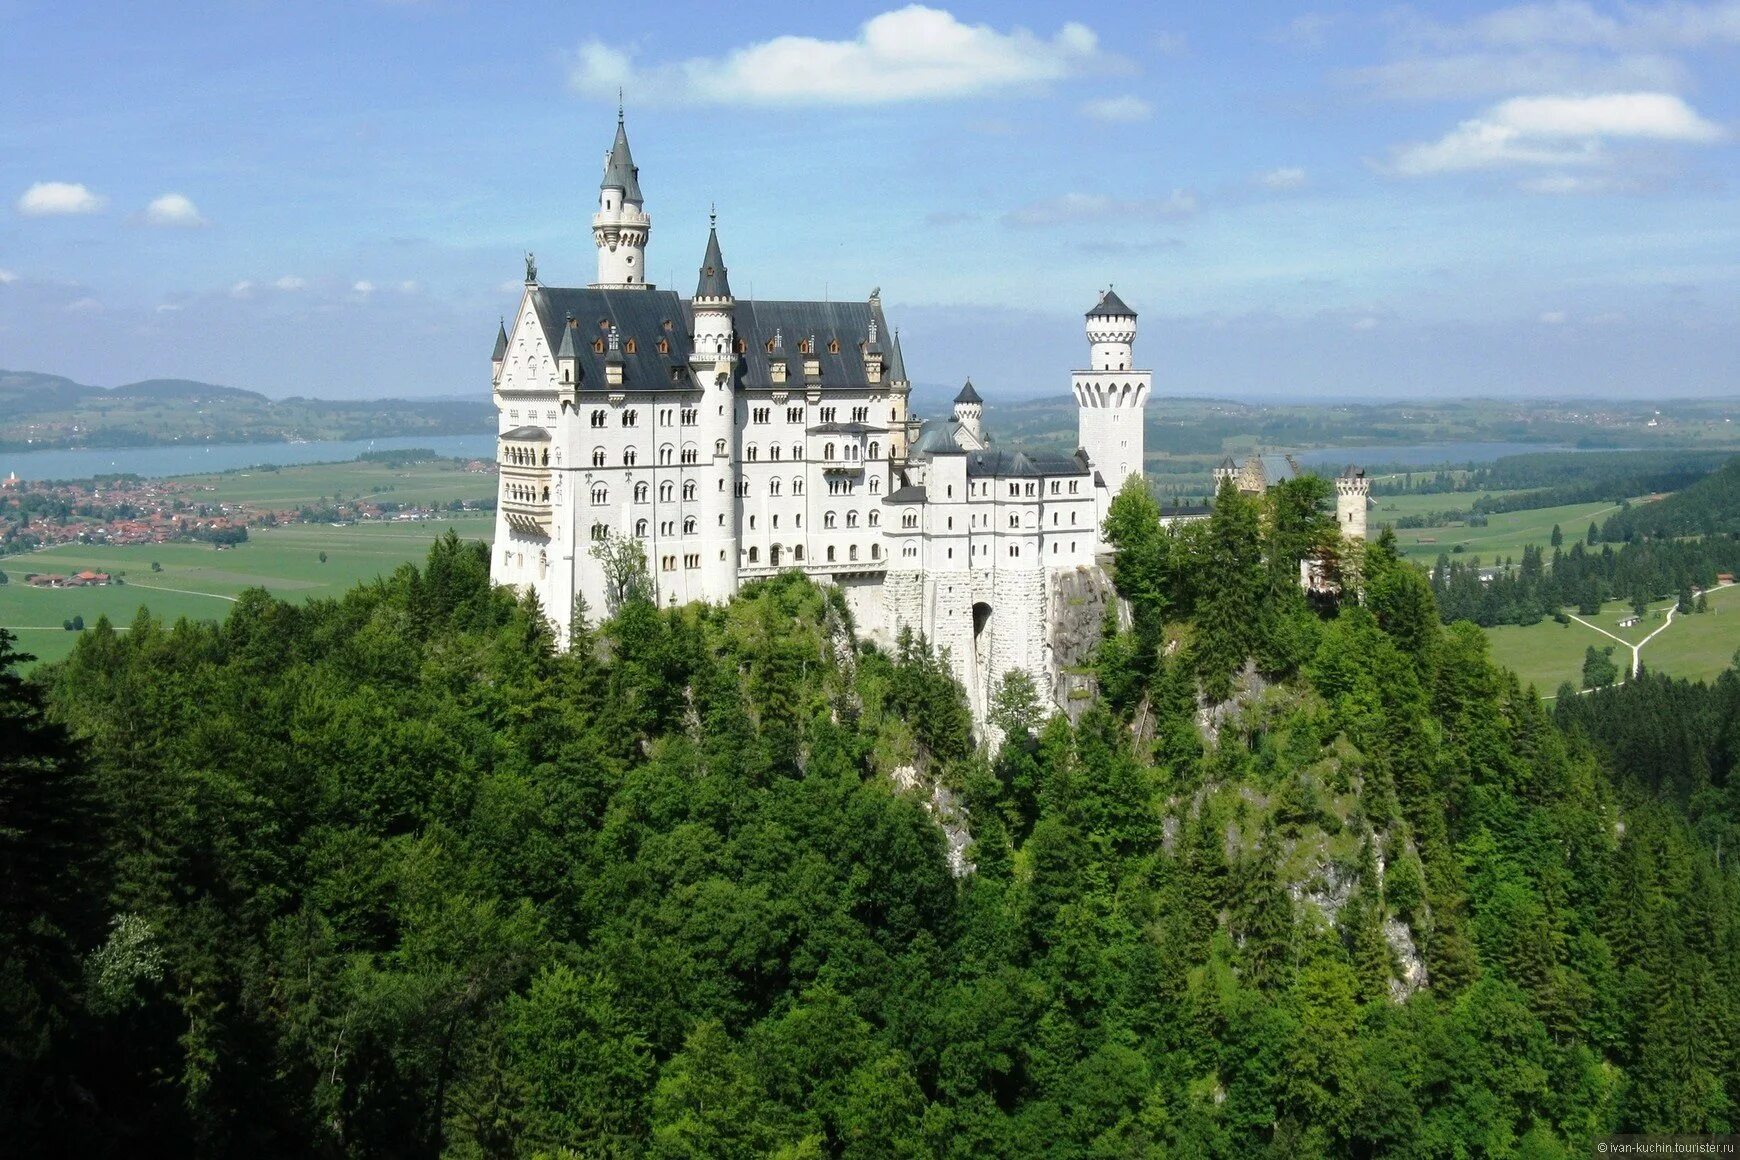 Окрестности замка. Замок Нойшванштайн. Замок в Германии Нойшванштайн фото. Бавария Германия. Фотообои замок Нойшванштайн.